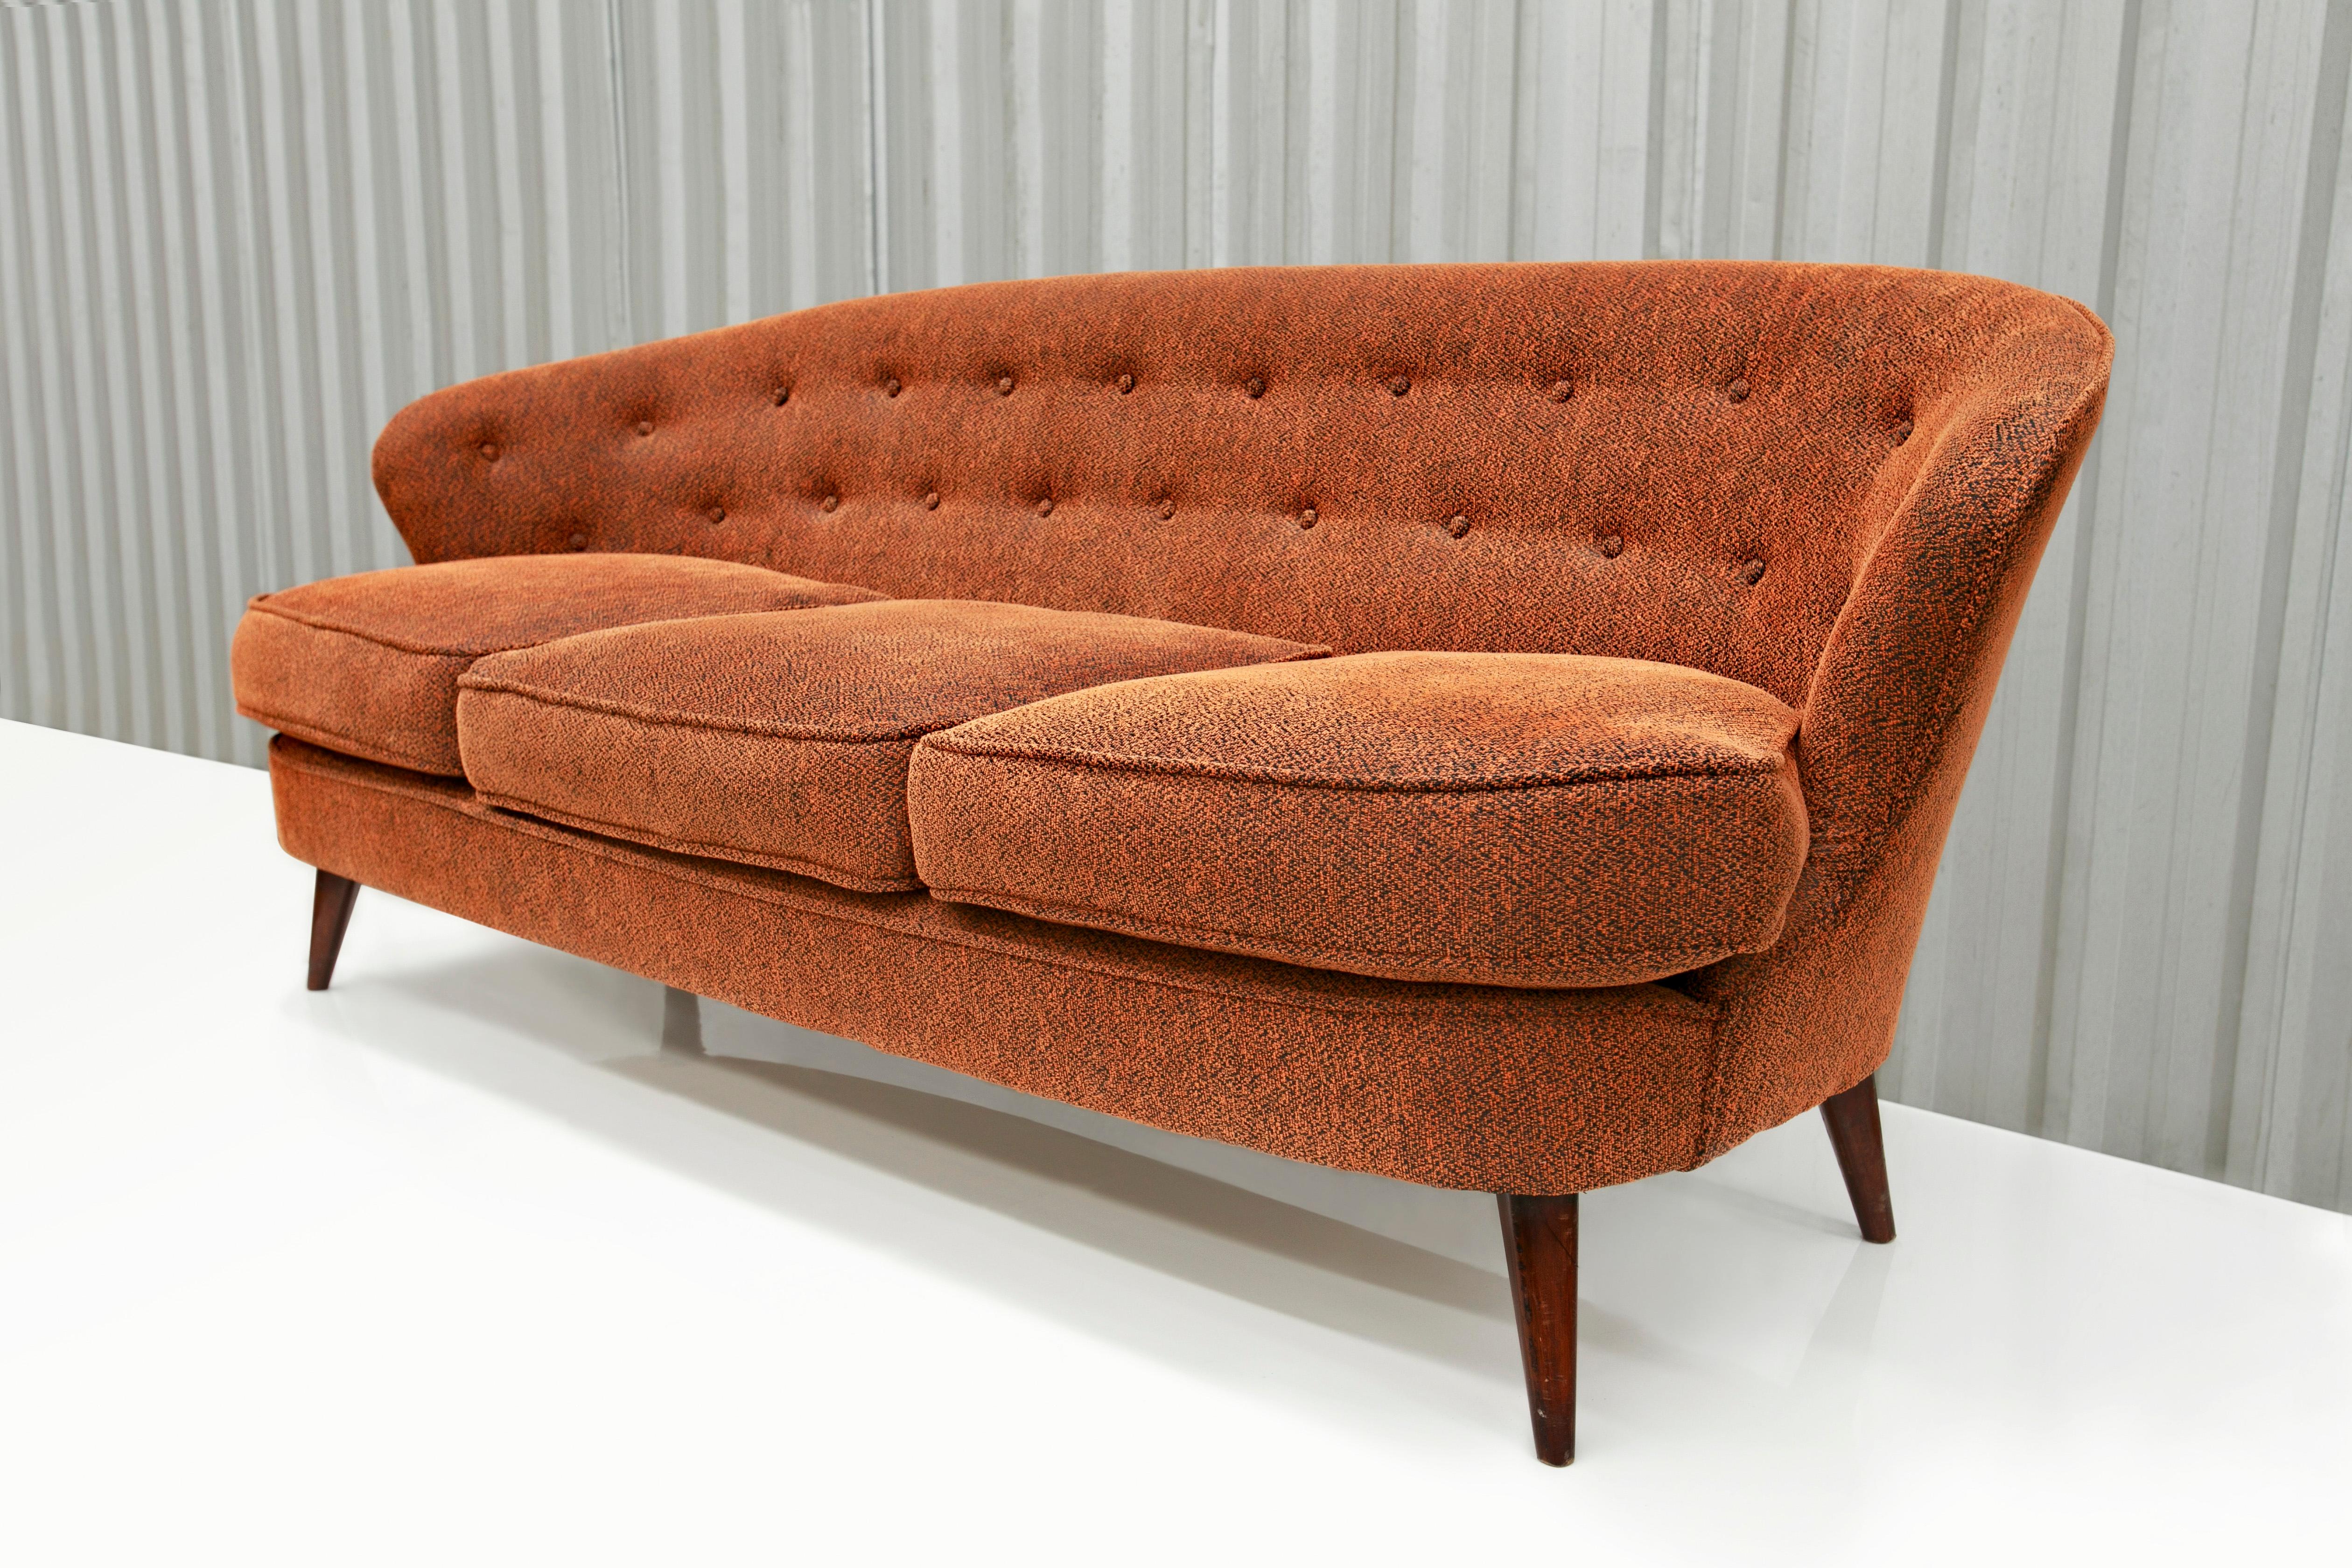 Dieses wunderschöne brasilianische moderne Sofa, das Joaquim Tenreiro in den sechziger Jahren entworfen hat, ist ab sofort erhältlich und absolut atemberaubend. Das Modell heißt 